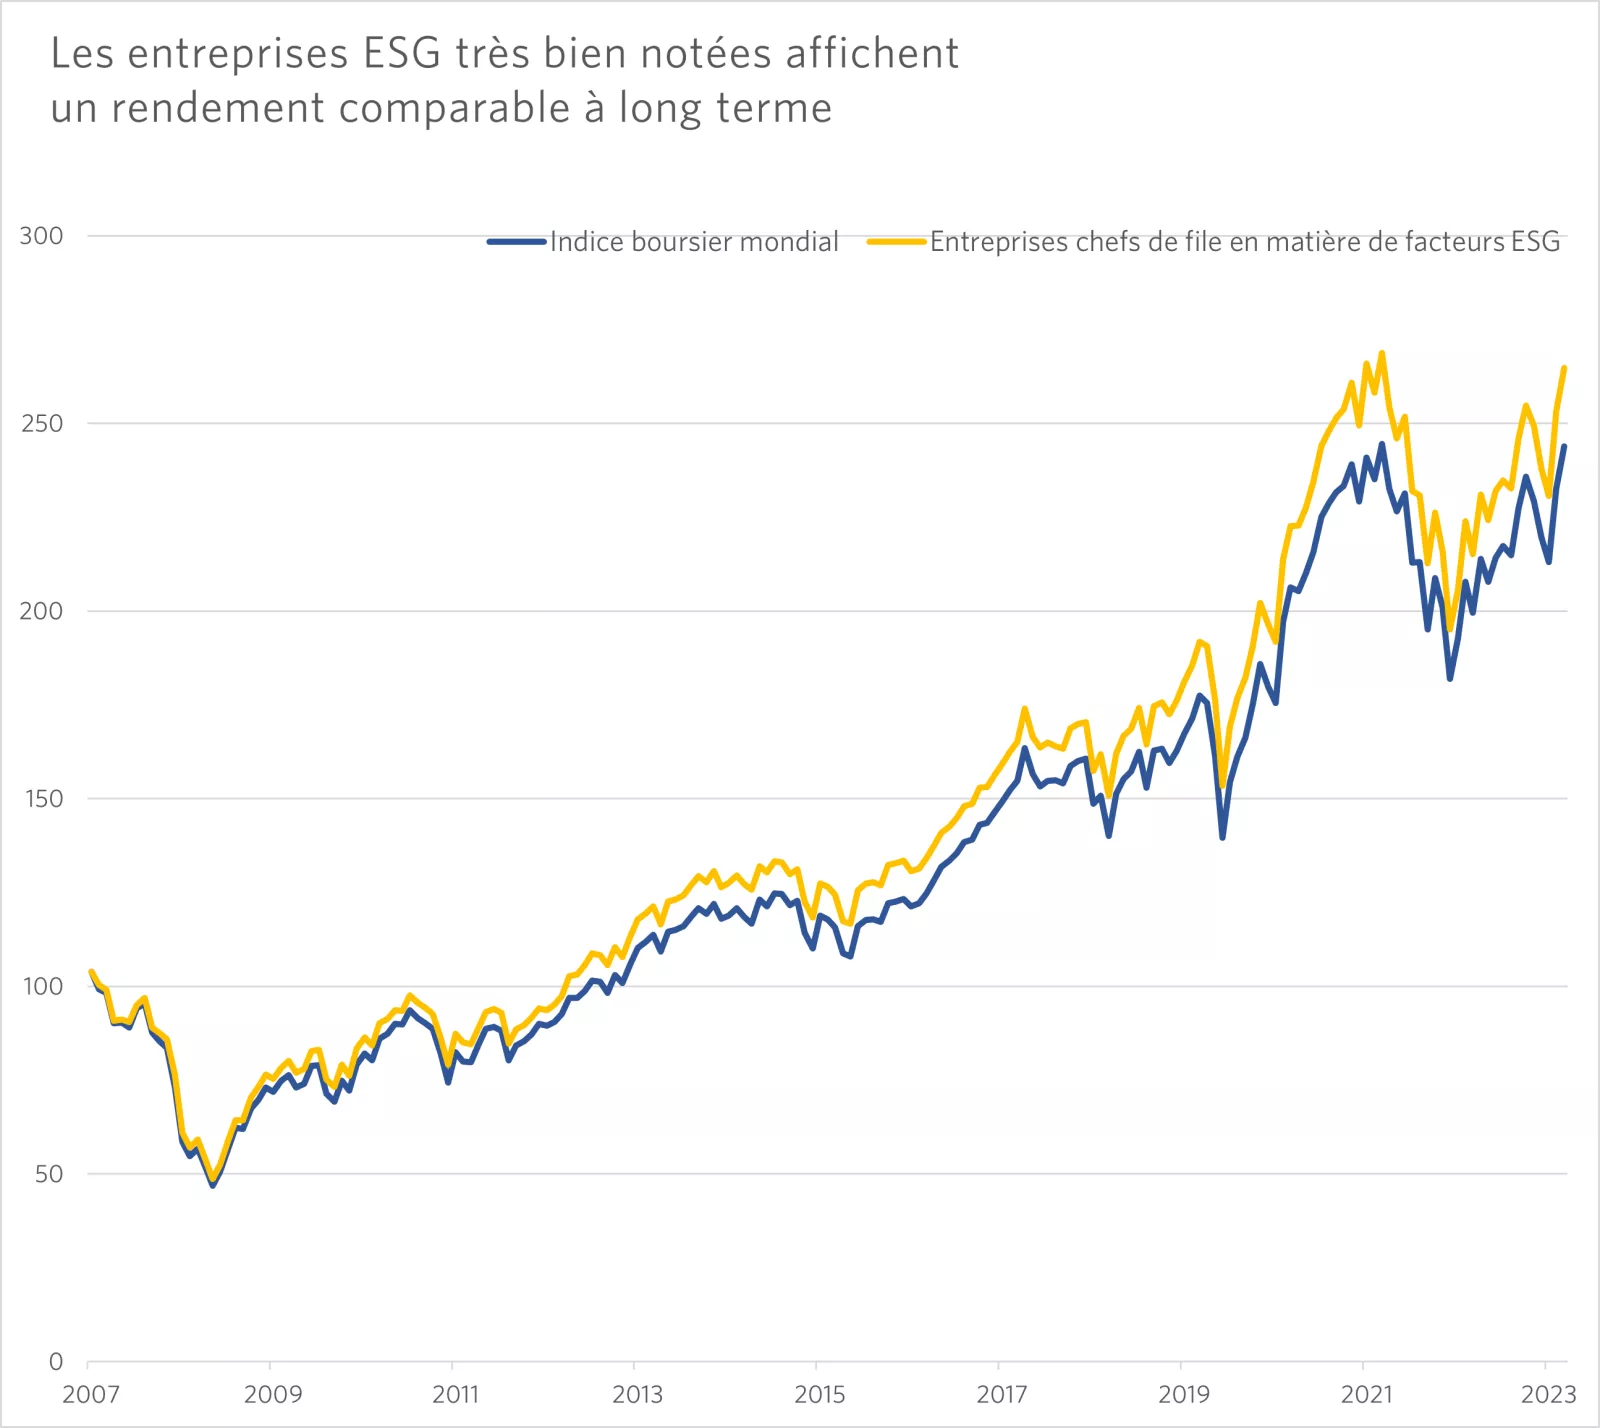 Ce graphique montre que, de 2007 à 2023, les chefs de file en matière de facteurs ESG ont affiché un rendement comparable à celui de l’indice boursier mondial. 